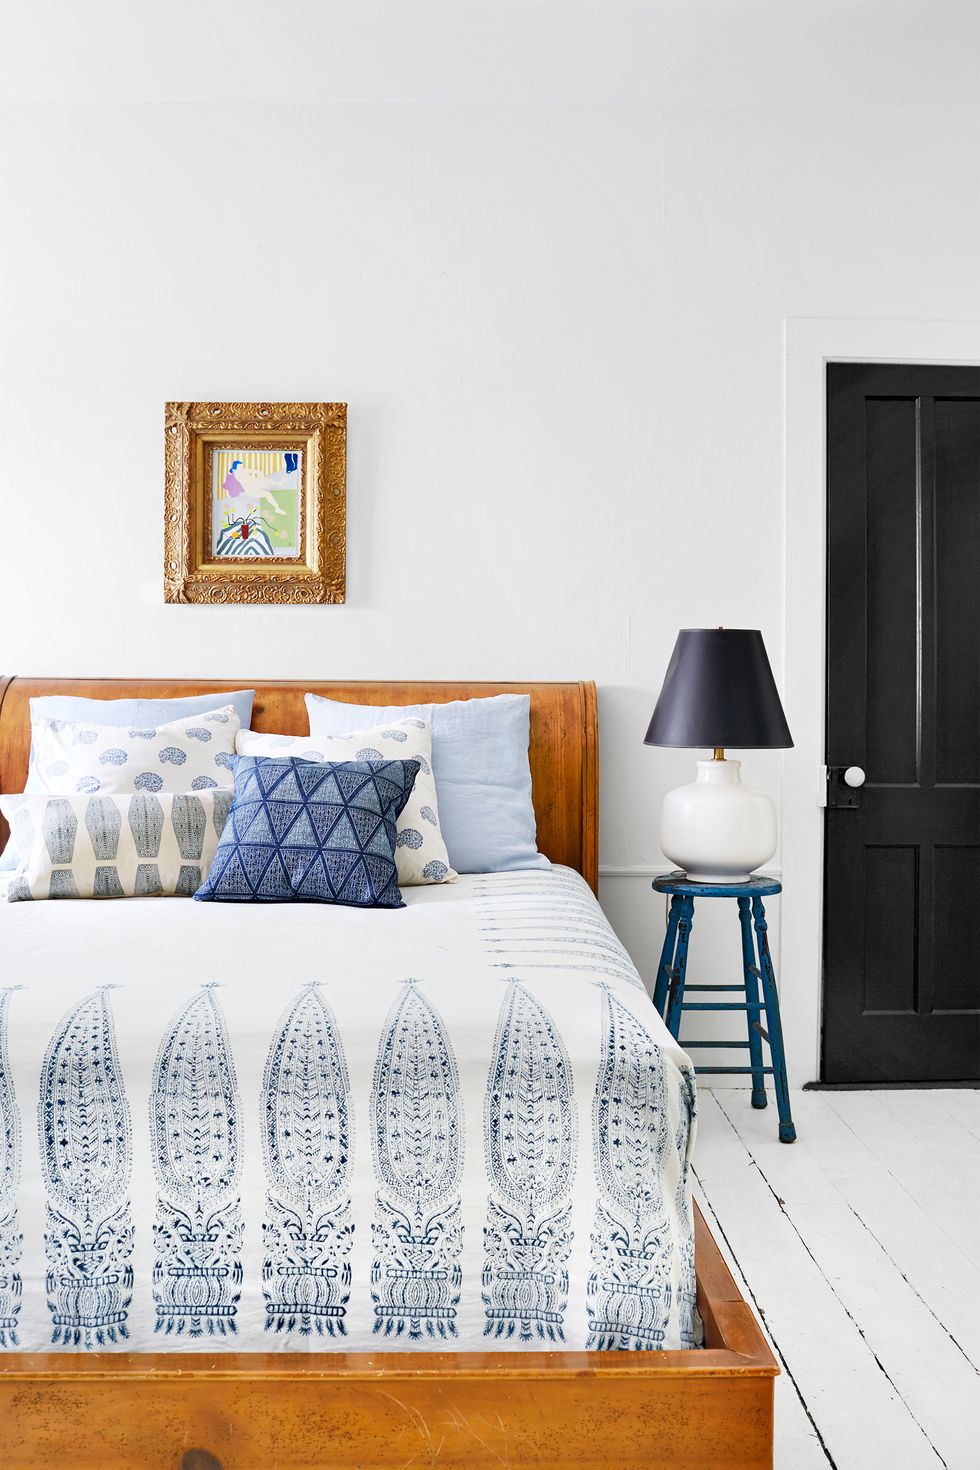 Hình ảnh một góc phòng ngủ với ga gối màu trắng họa tiết xanh dương, cạnh đó là bàn đặt đèn ngủ 